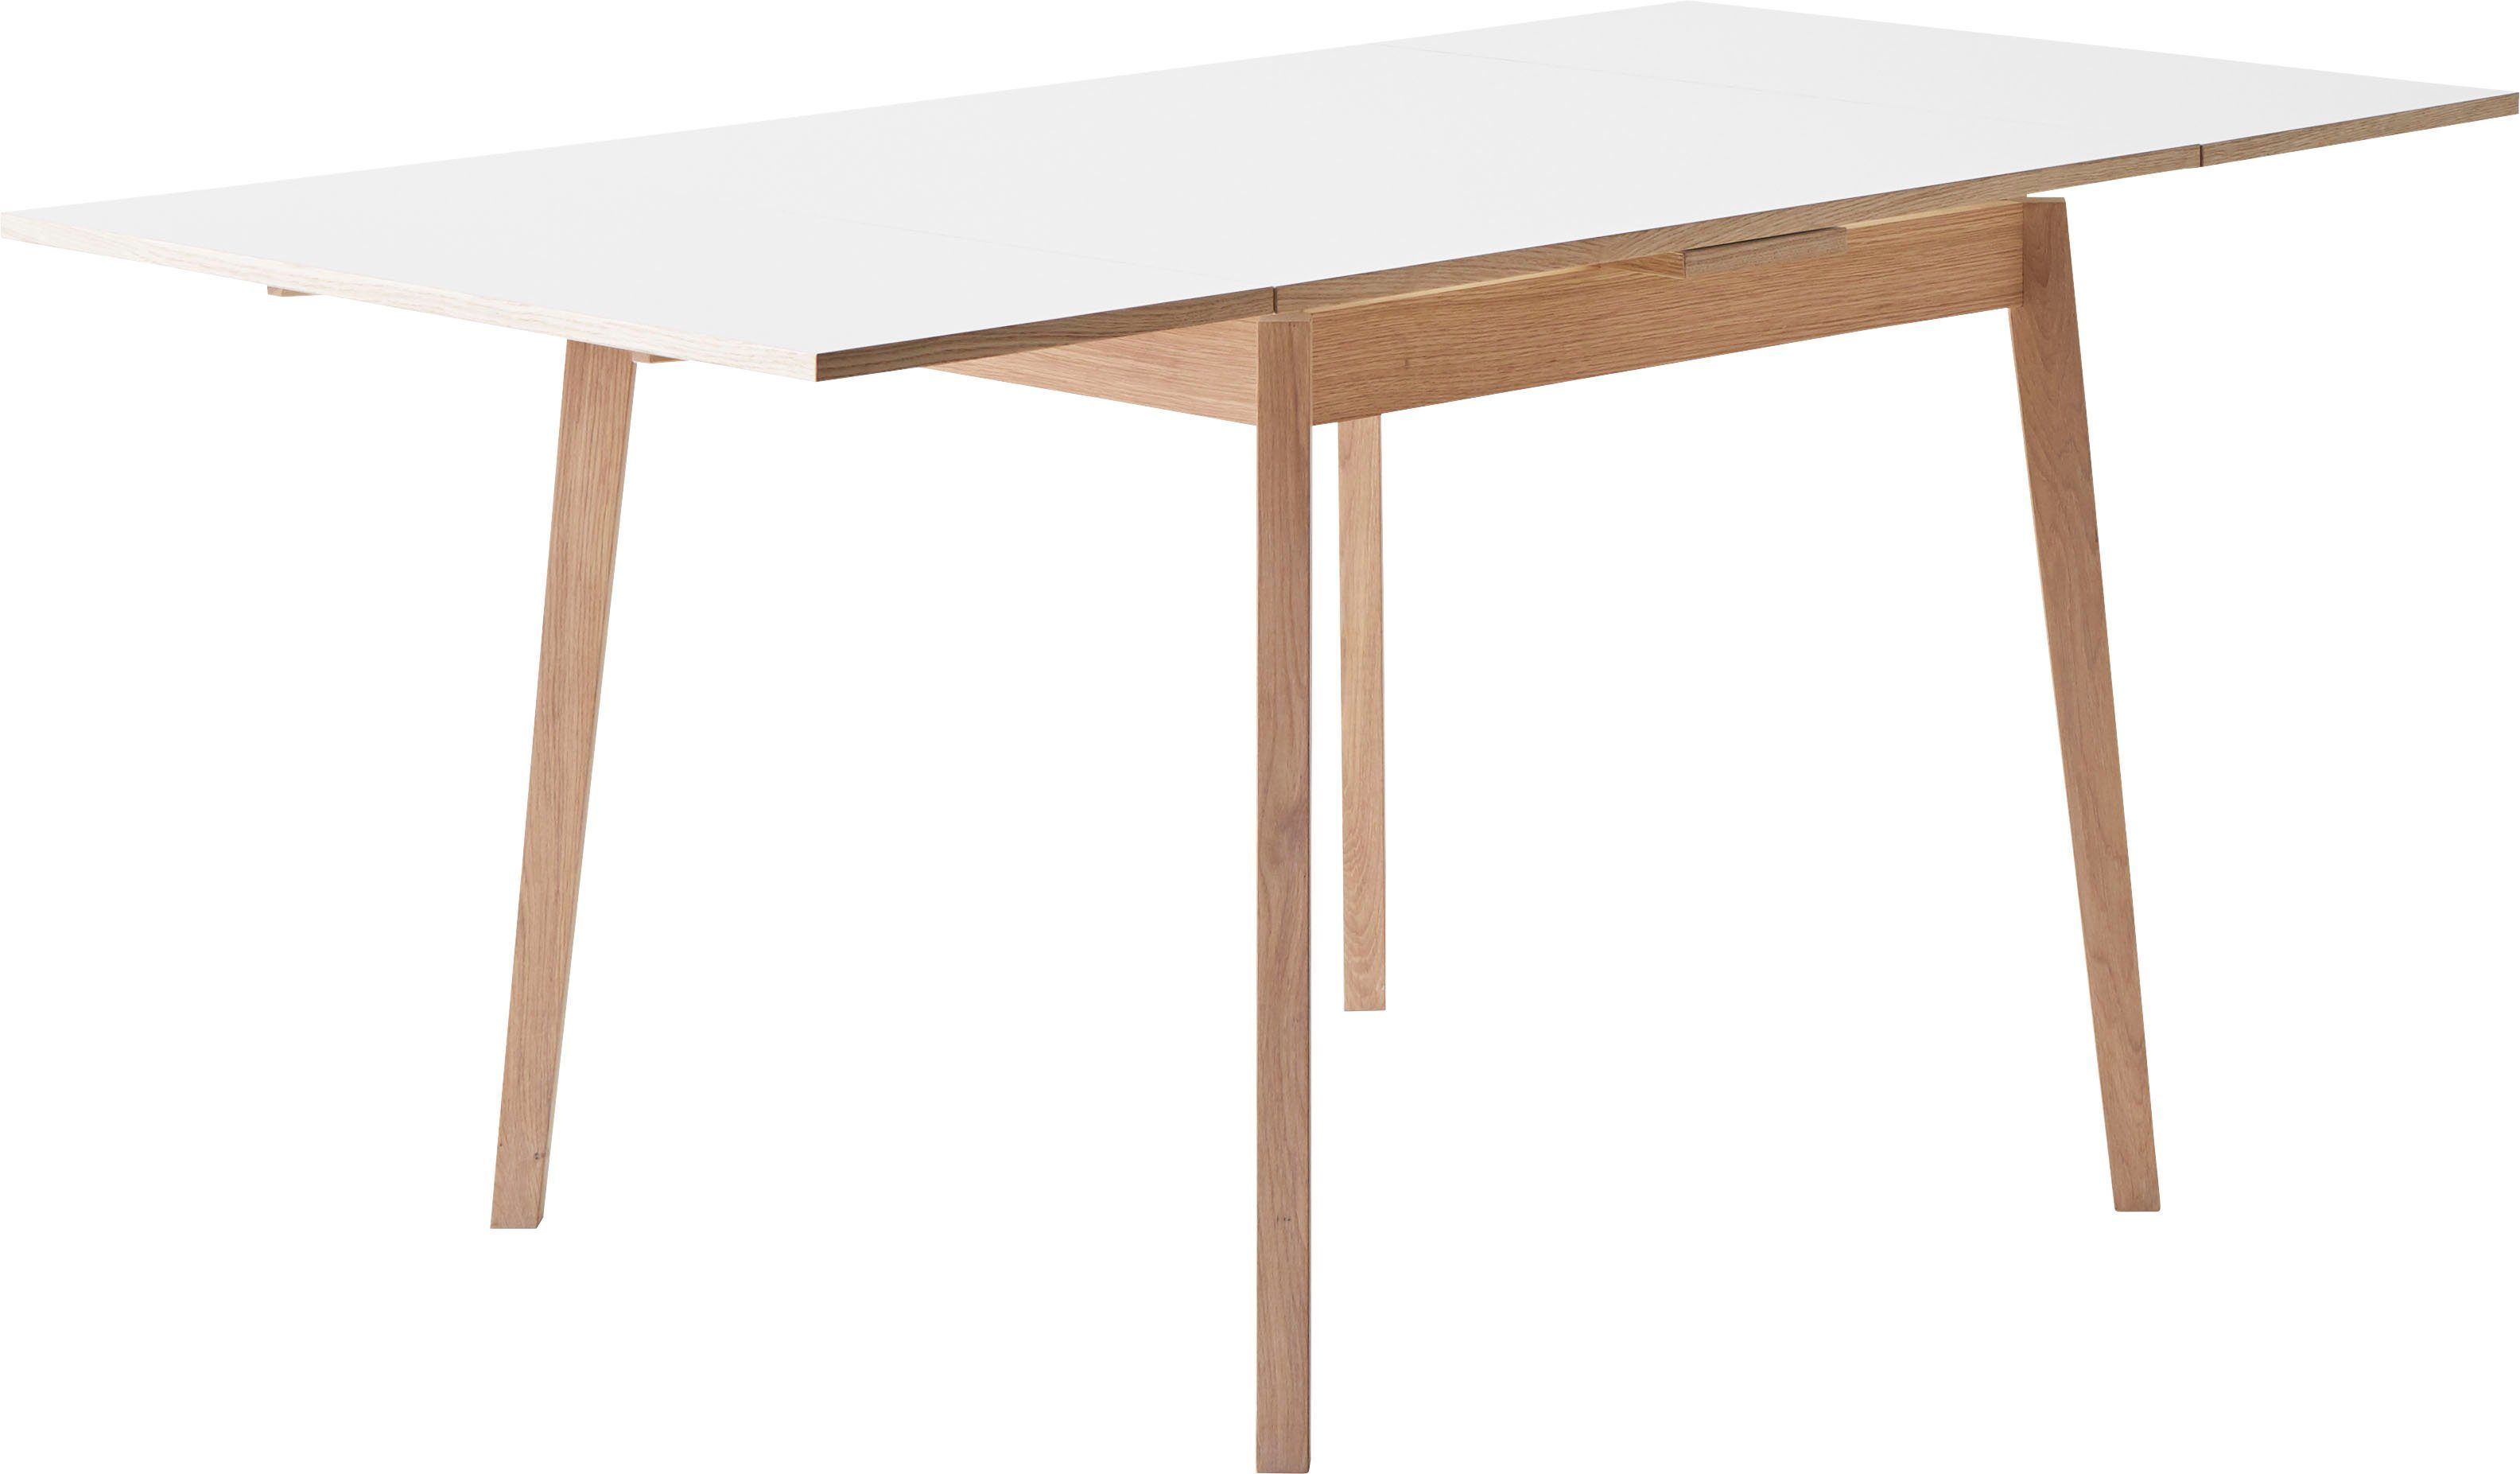 Hammel Furniture Esstisch Basic by aus Tischplatte Gestell Melamin, aus Weiß/Naturfarben Massivholz cm, 90(164)x90 Single, Hammel